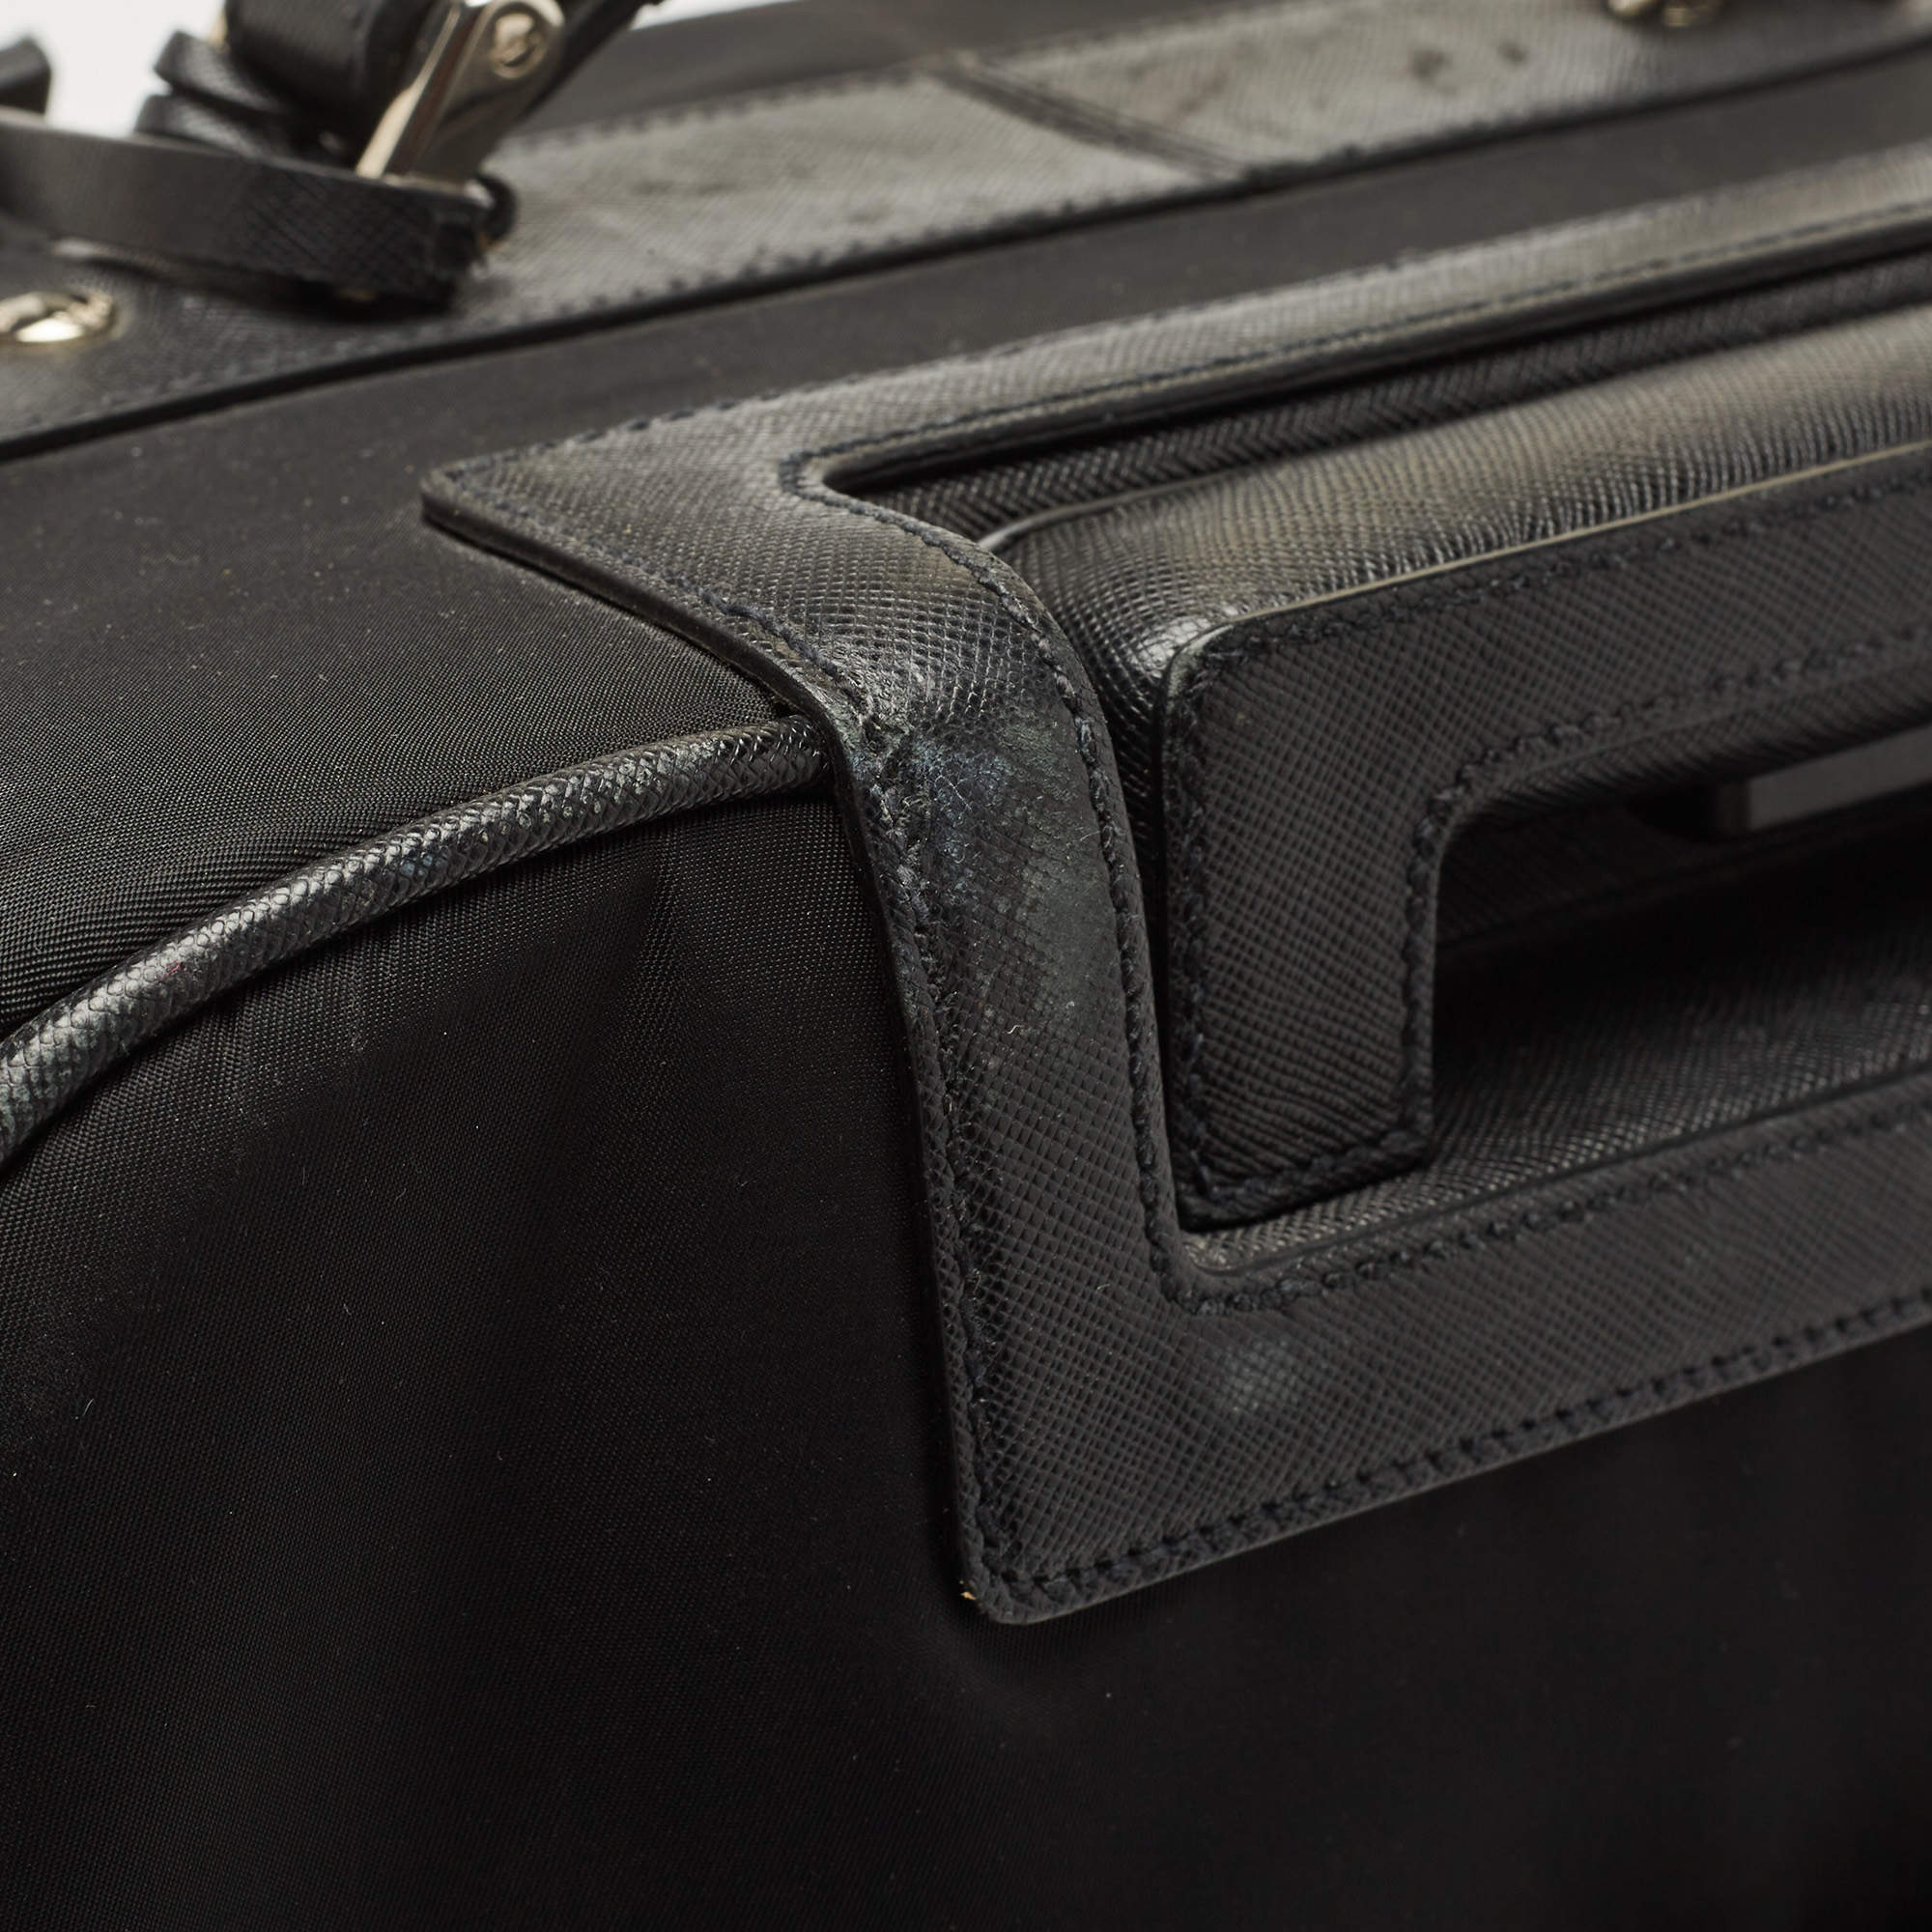 Prada Tessuto Nylon Saffiano Leather Travel Trolley Suitcase 50 Black